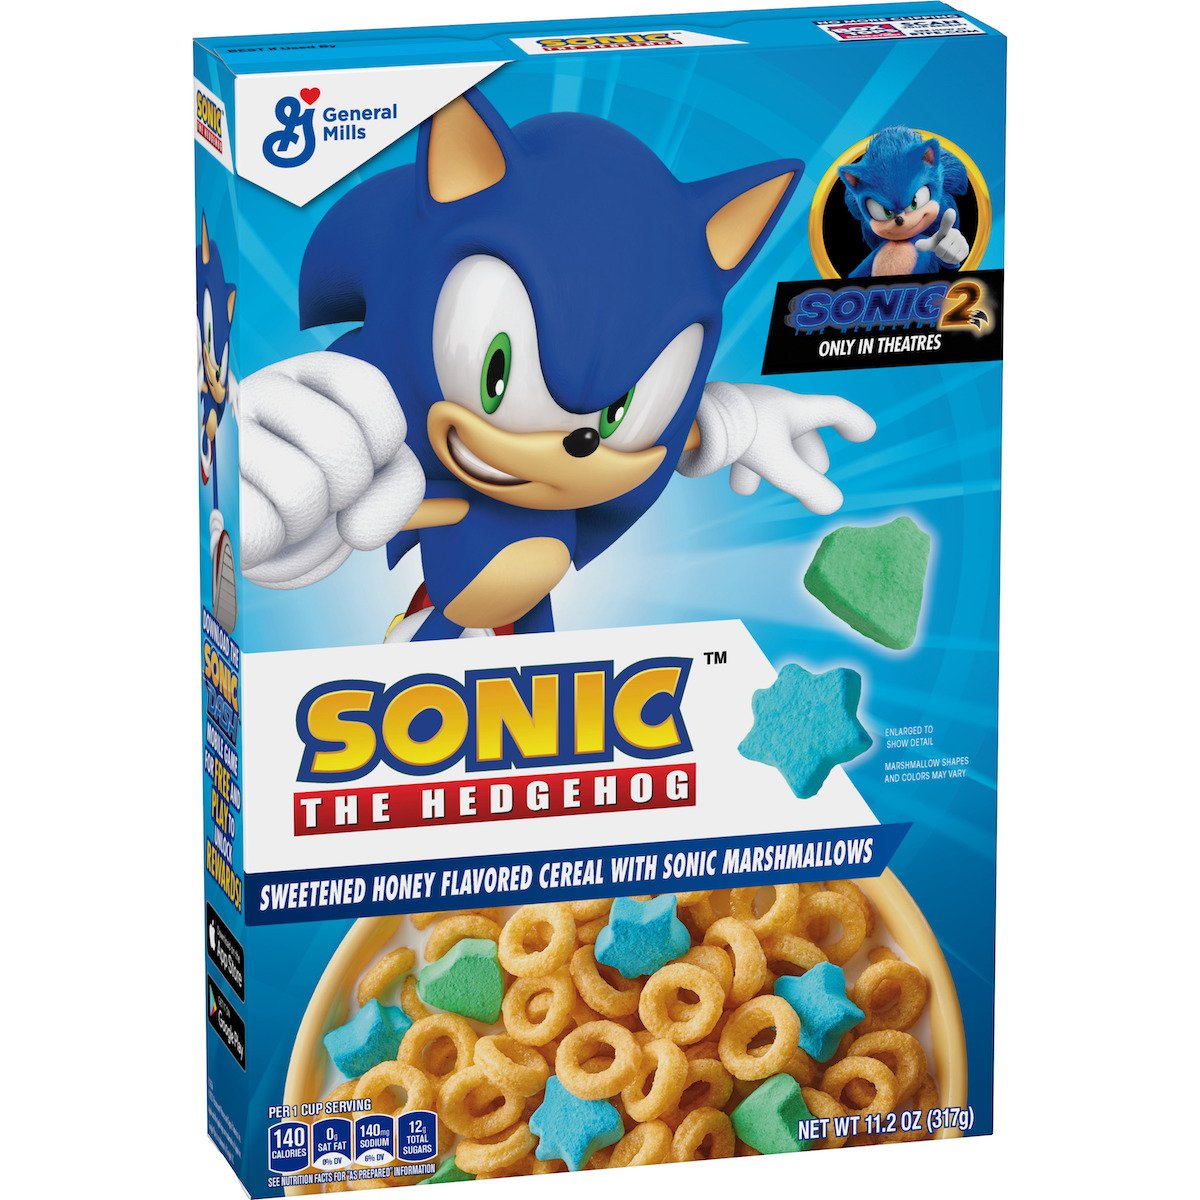 Sonic Paradise on X: La empresa estadounidense General Mills va a poner a  la venta dos tipos de cereales de Sonic! Por el momento asumimos que solo  llegarán a territorios americanos.  /